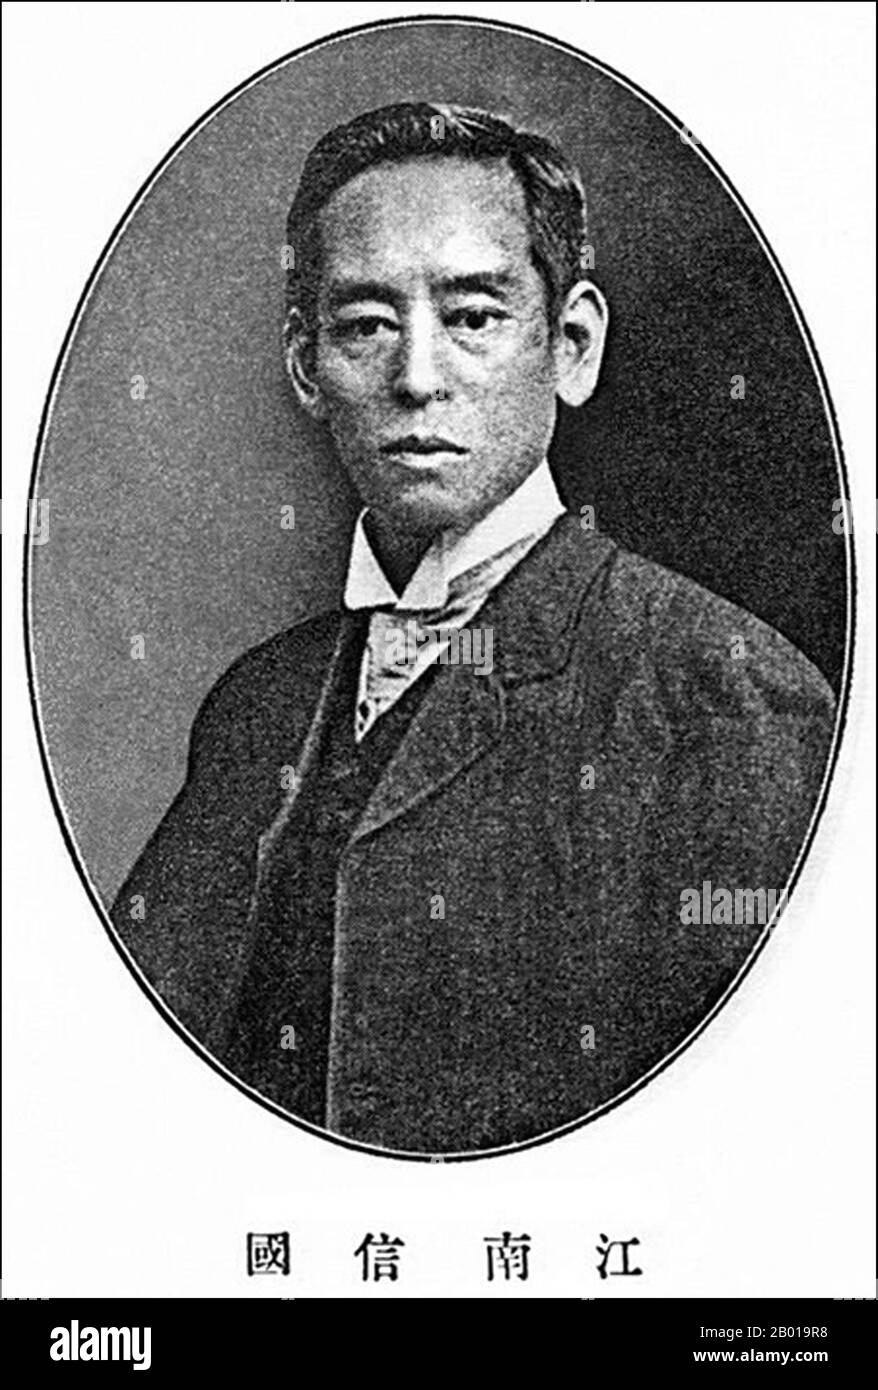 Japan: T. Enami (1859-1929), früher japanischer Fotograf. Selbstporträt, c. 1909. T. Enami (Enami Nobukuni) war der Handelsname eines berühmten Meiji-Fotografen. Der T. seines Handelsnamens soll für Toshi gestanden haben, obwohl er ihn nie auf einem persönlichen oder geschäftlichen Dokument geschrieben hat. Geboren in Edo (heute Tokio) während der Bakumatsu-Ära, war Enami zuerst Schüler und dann Assistent des bekannten Fotografen und Umgangssprache, Ogawa Kazumasa. Enami zog nach Yokohama und eröffnete 1892 ein Studio in der Benten-dōri (Benten Street). Stockfoto